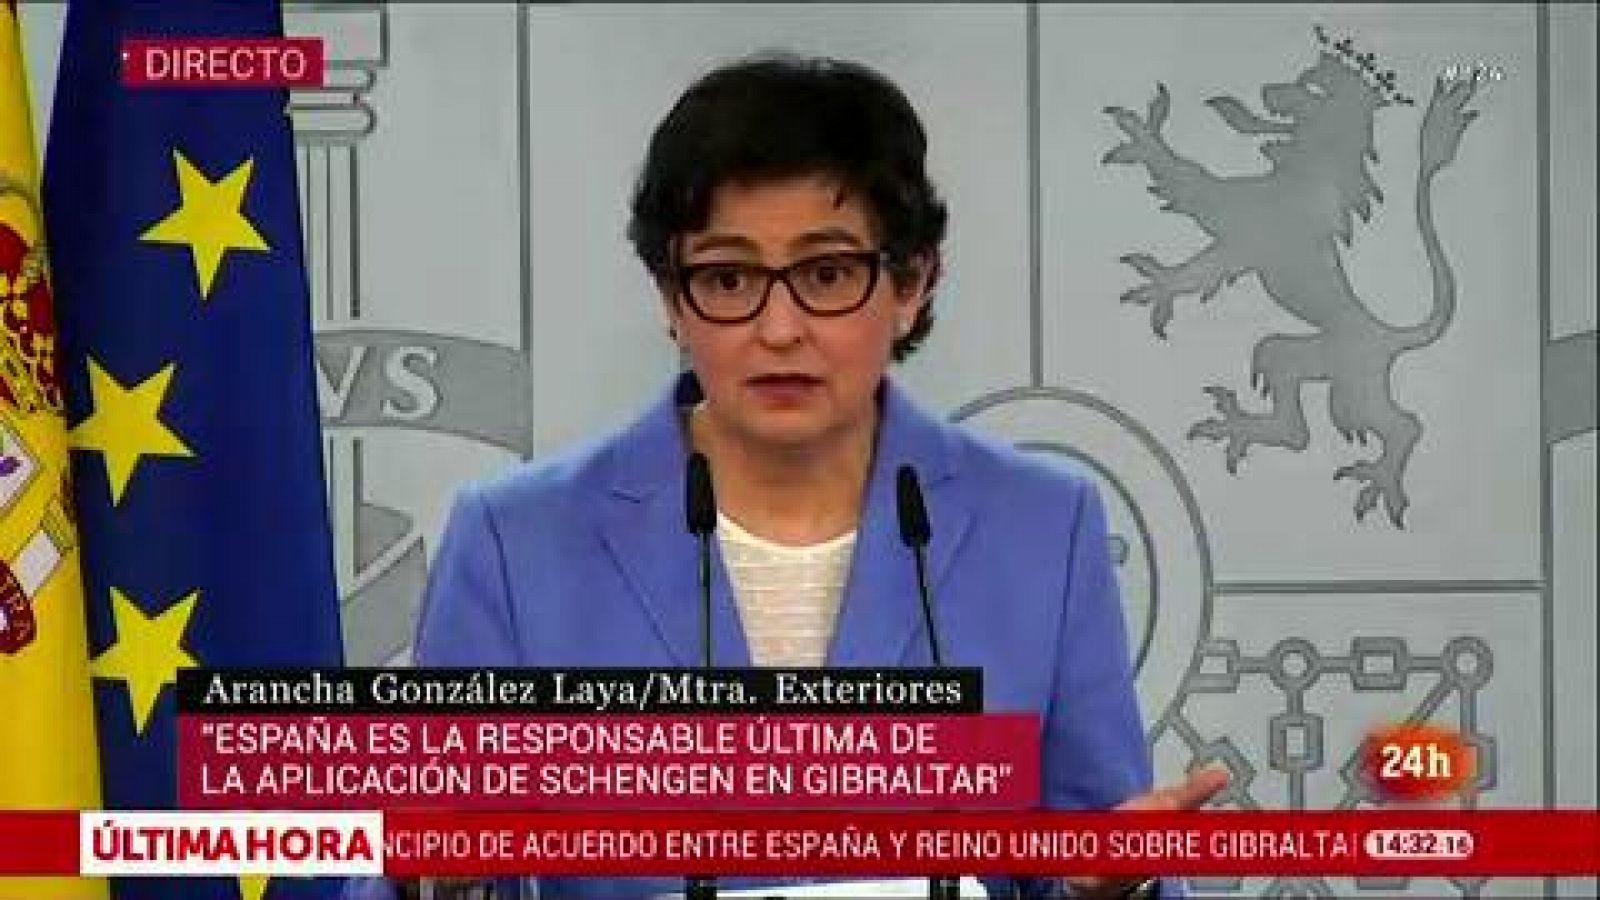 González Laya: "El resultado práctico de este acuerdo con Reino Unido es que se derriba la verja de Gibraltar'